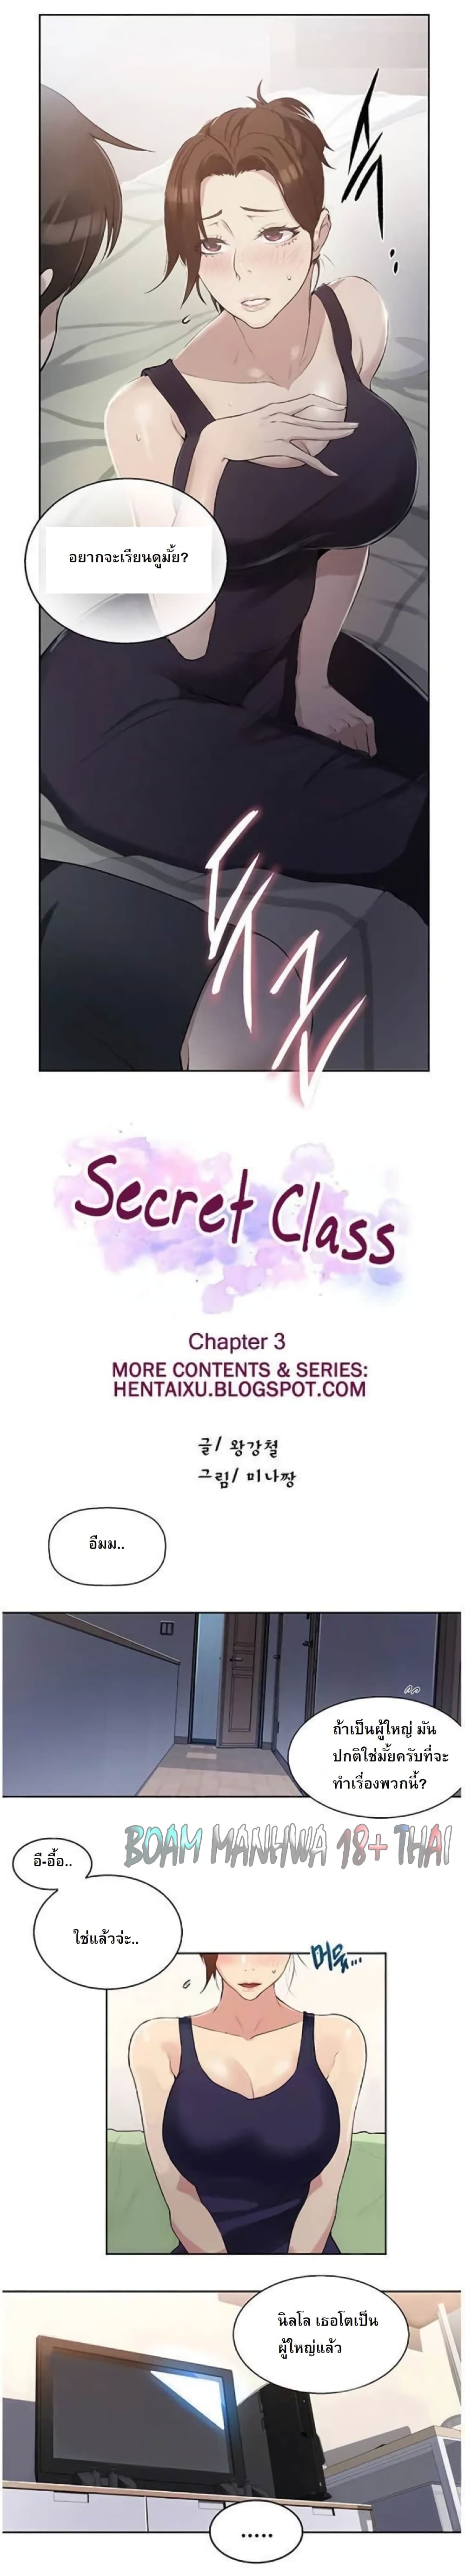 Secret Class3 (1)